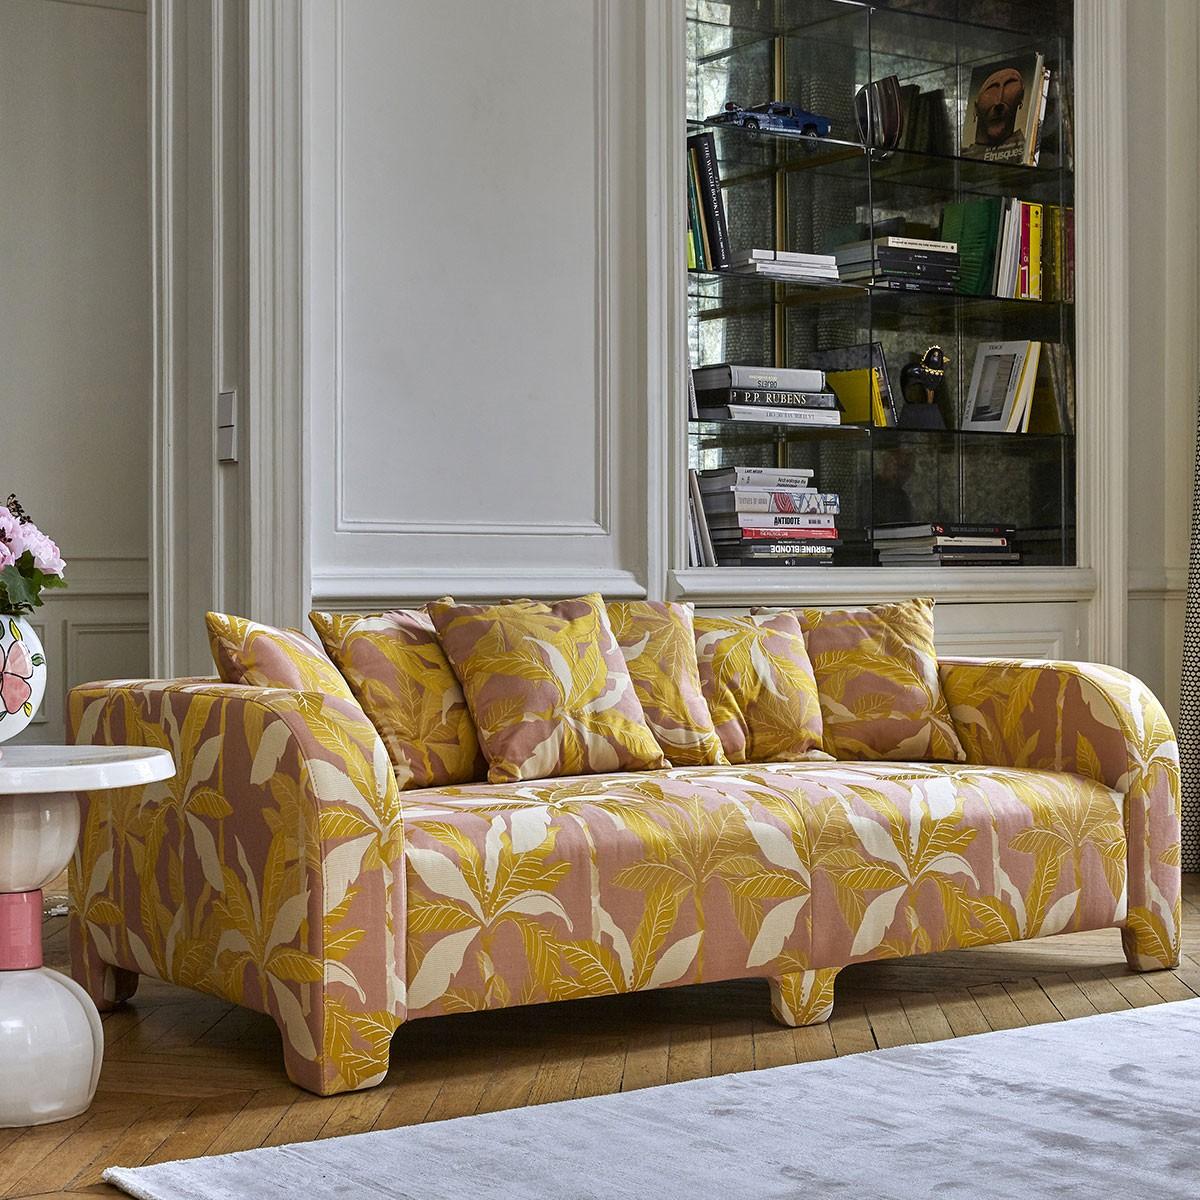 Popus Editions Graziella 3 Seater-Sofa mit rosa Como-Samtpolsterung

Ein Fuß, der einen anderen verbirgt. Ein Kissen, das ein anderes verdeckt. Eine Kurve, die eine andere verbirgt, mit zeitgenössischen Linien und einem Sockel, der wie ein